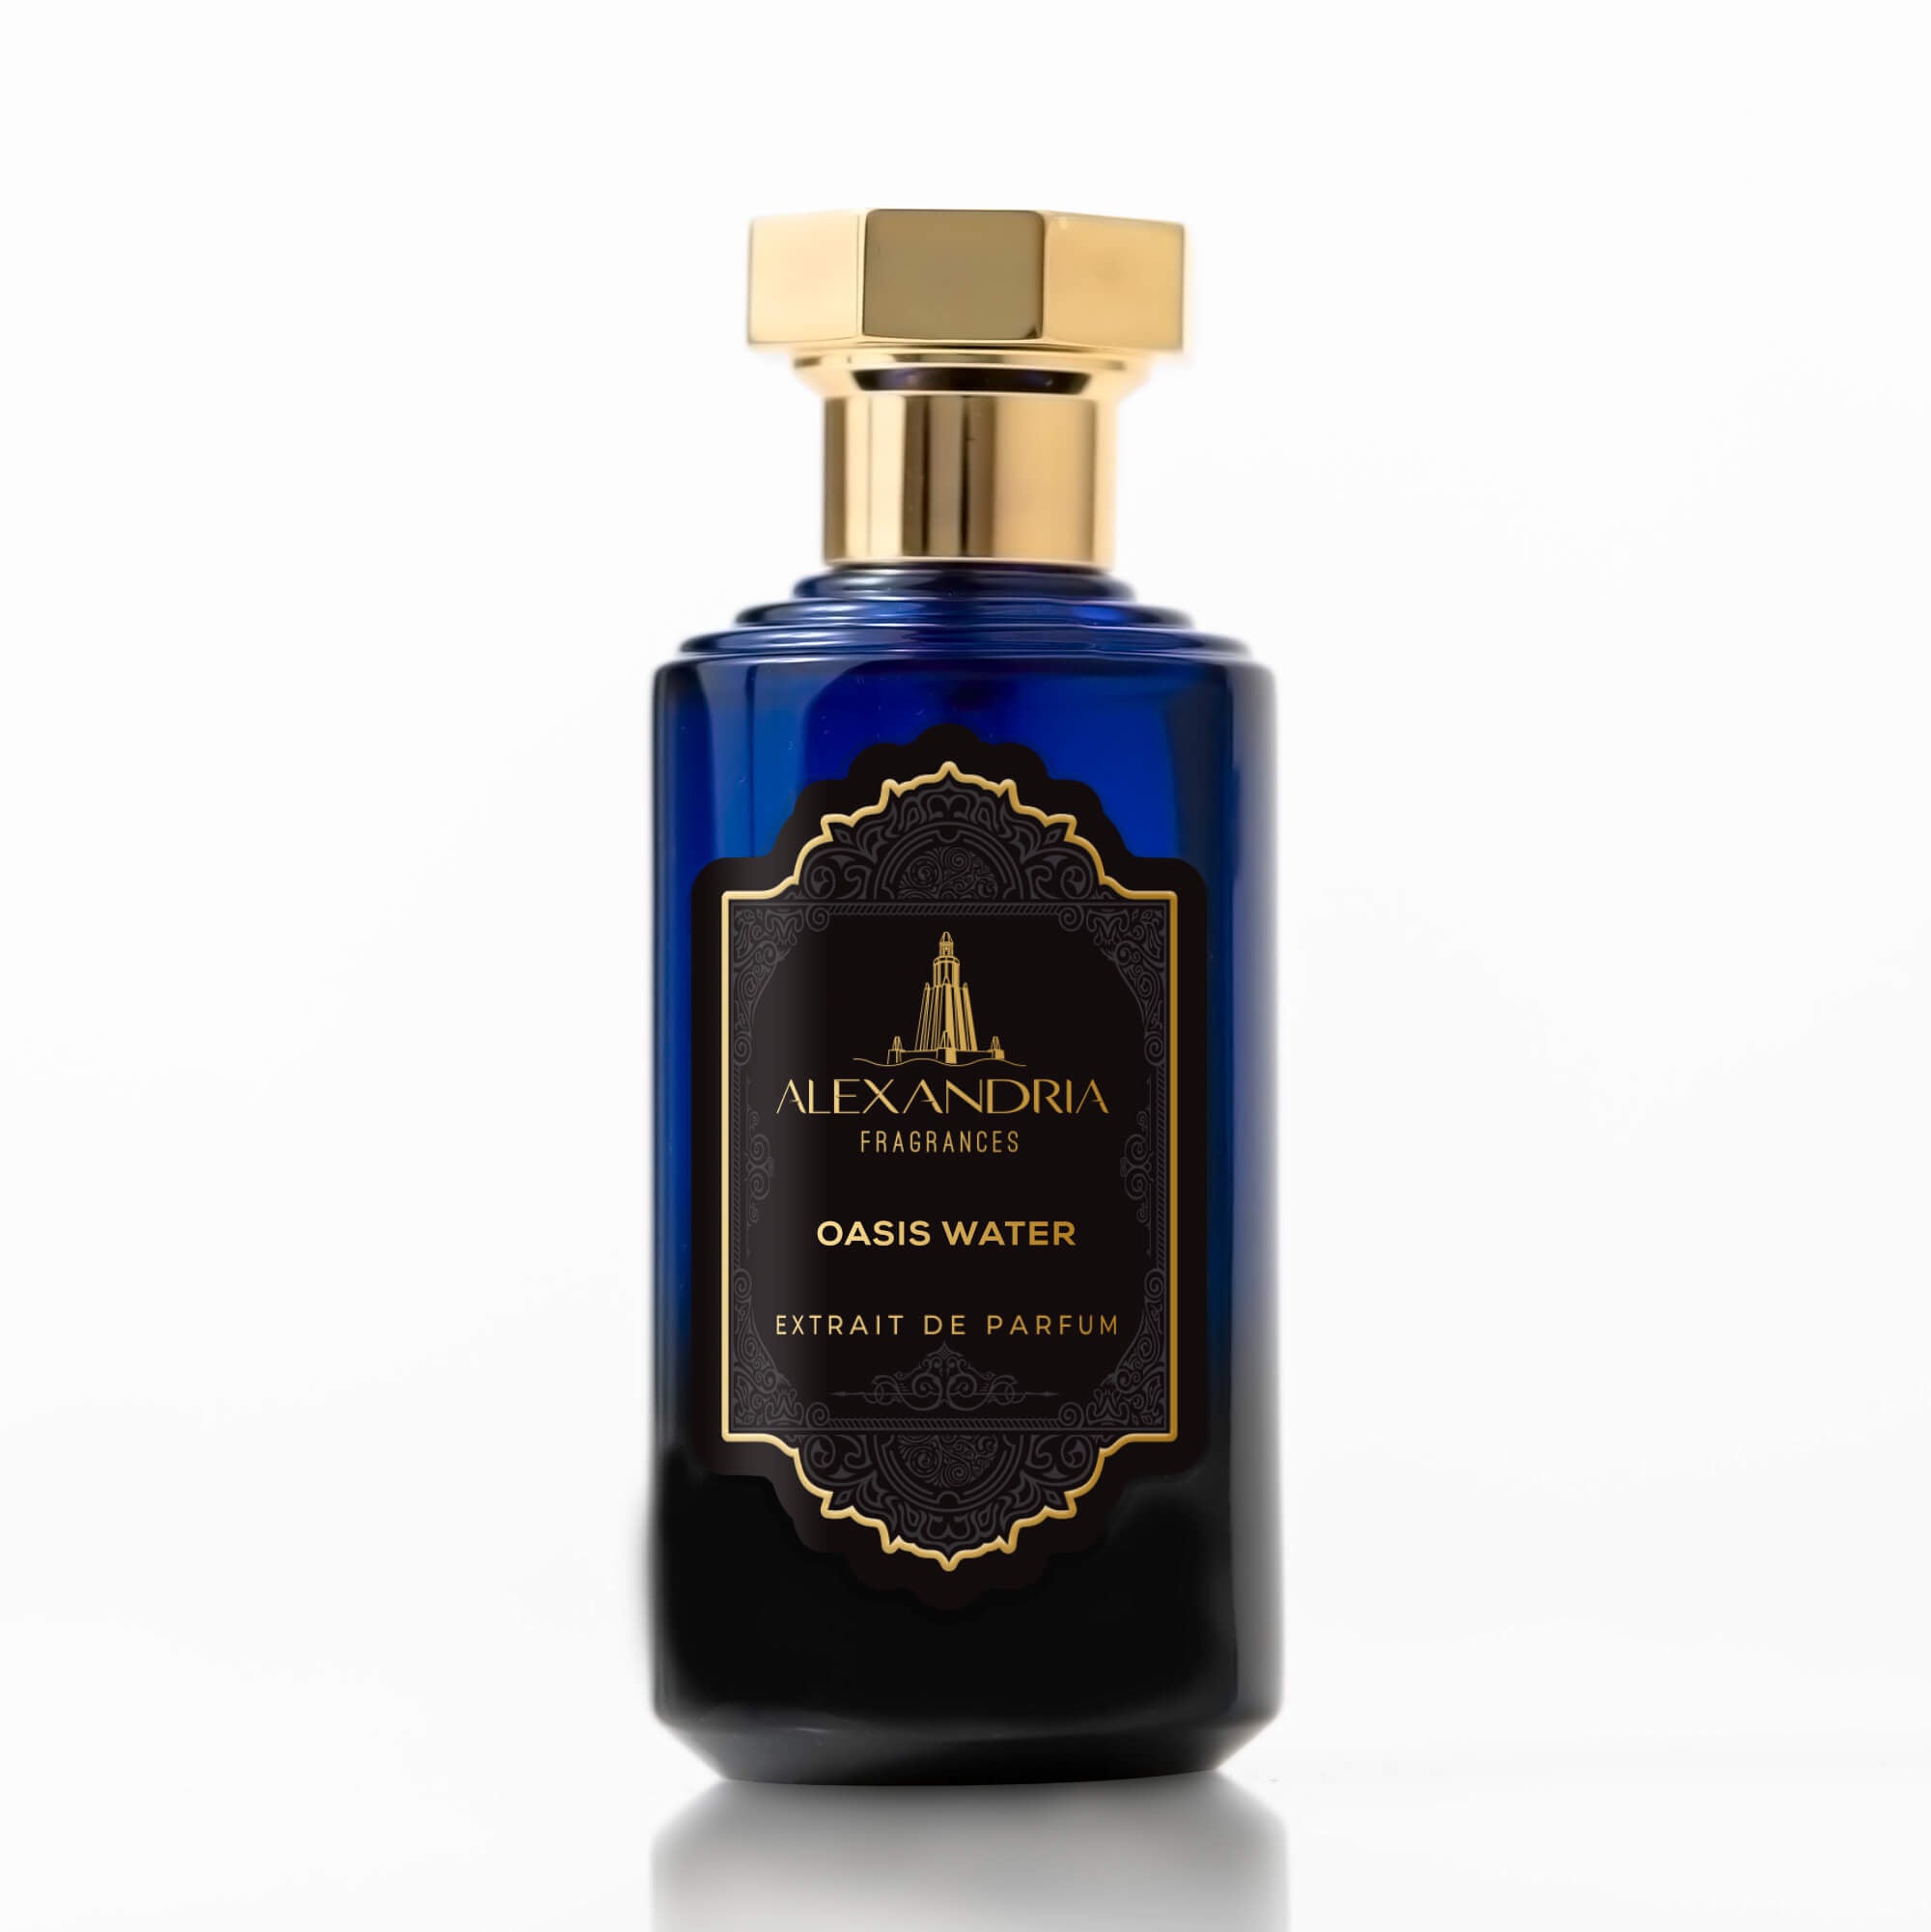 Byredo Gypsy Water Perfume Impression | Nostalgic